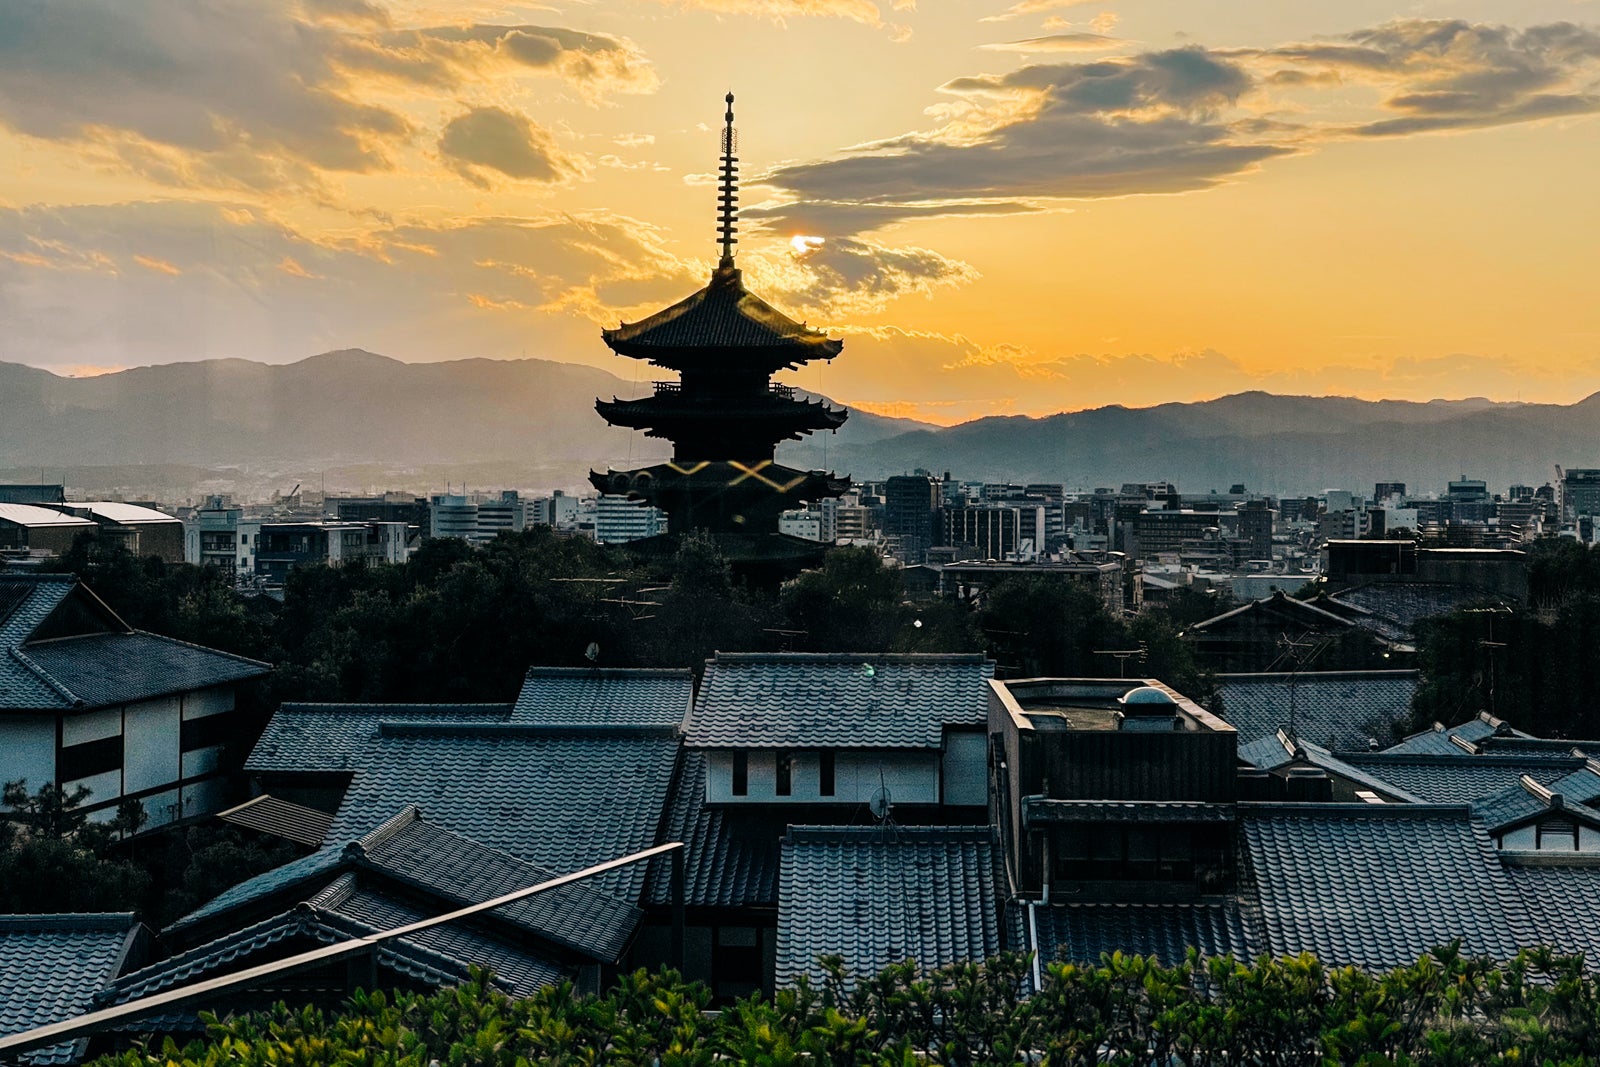 Yasaka Pagoda in Kyoto, Japan at sunset